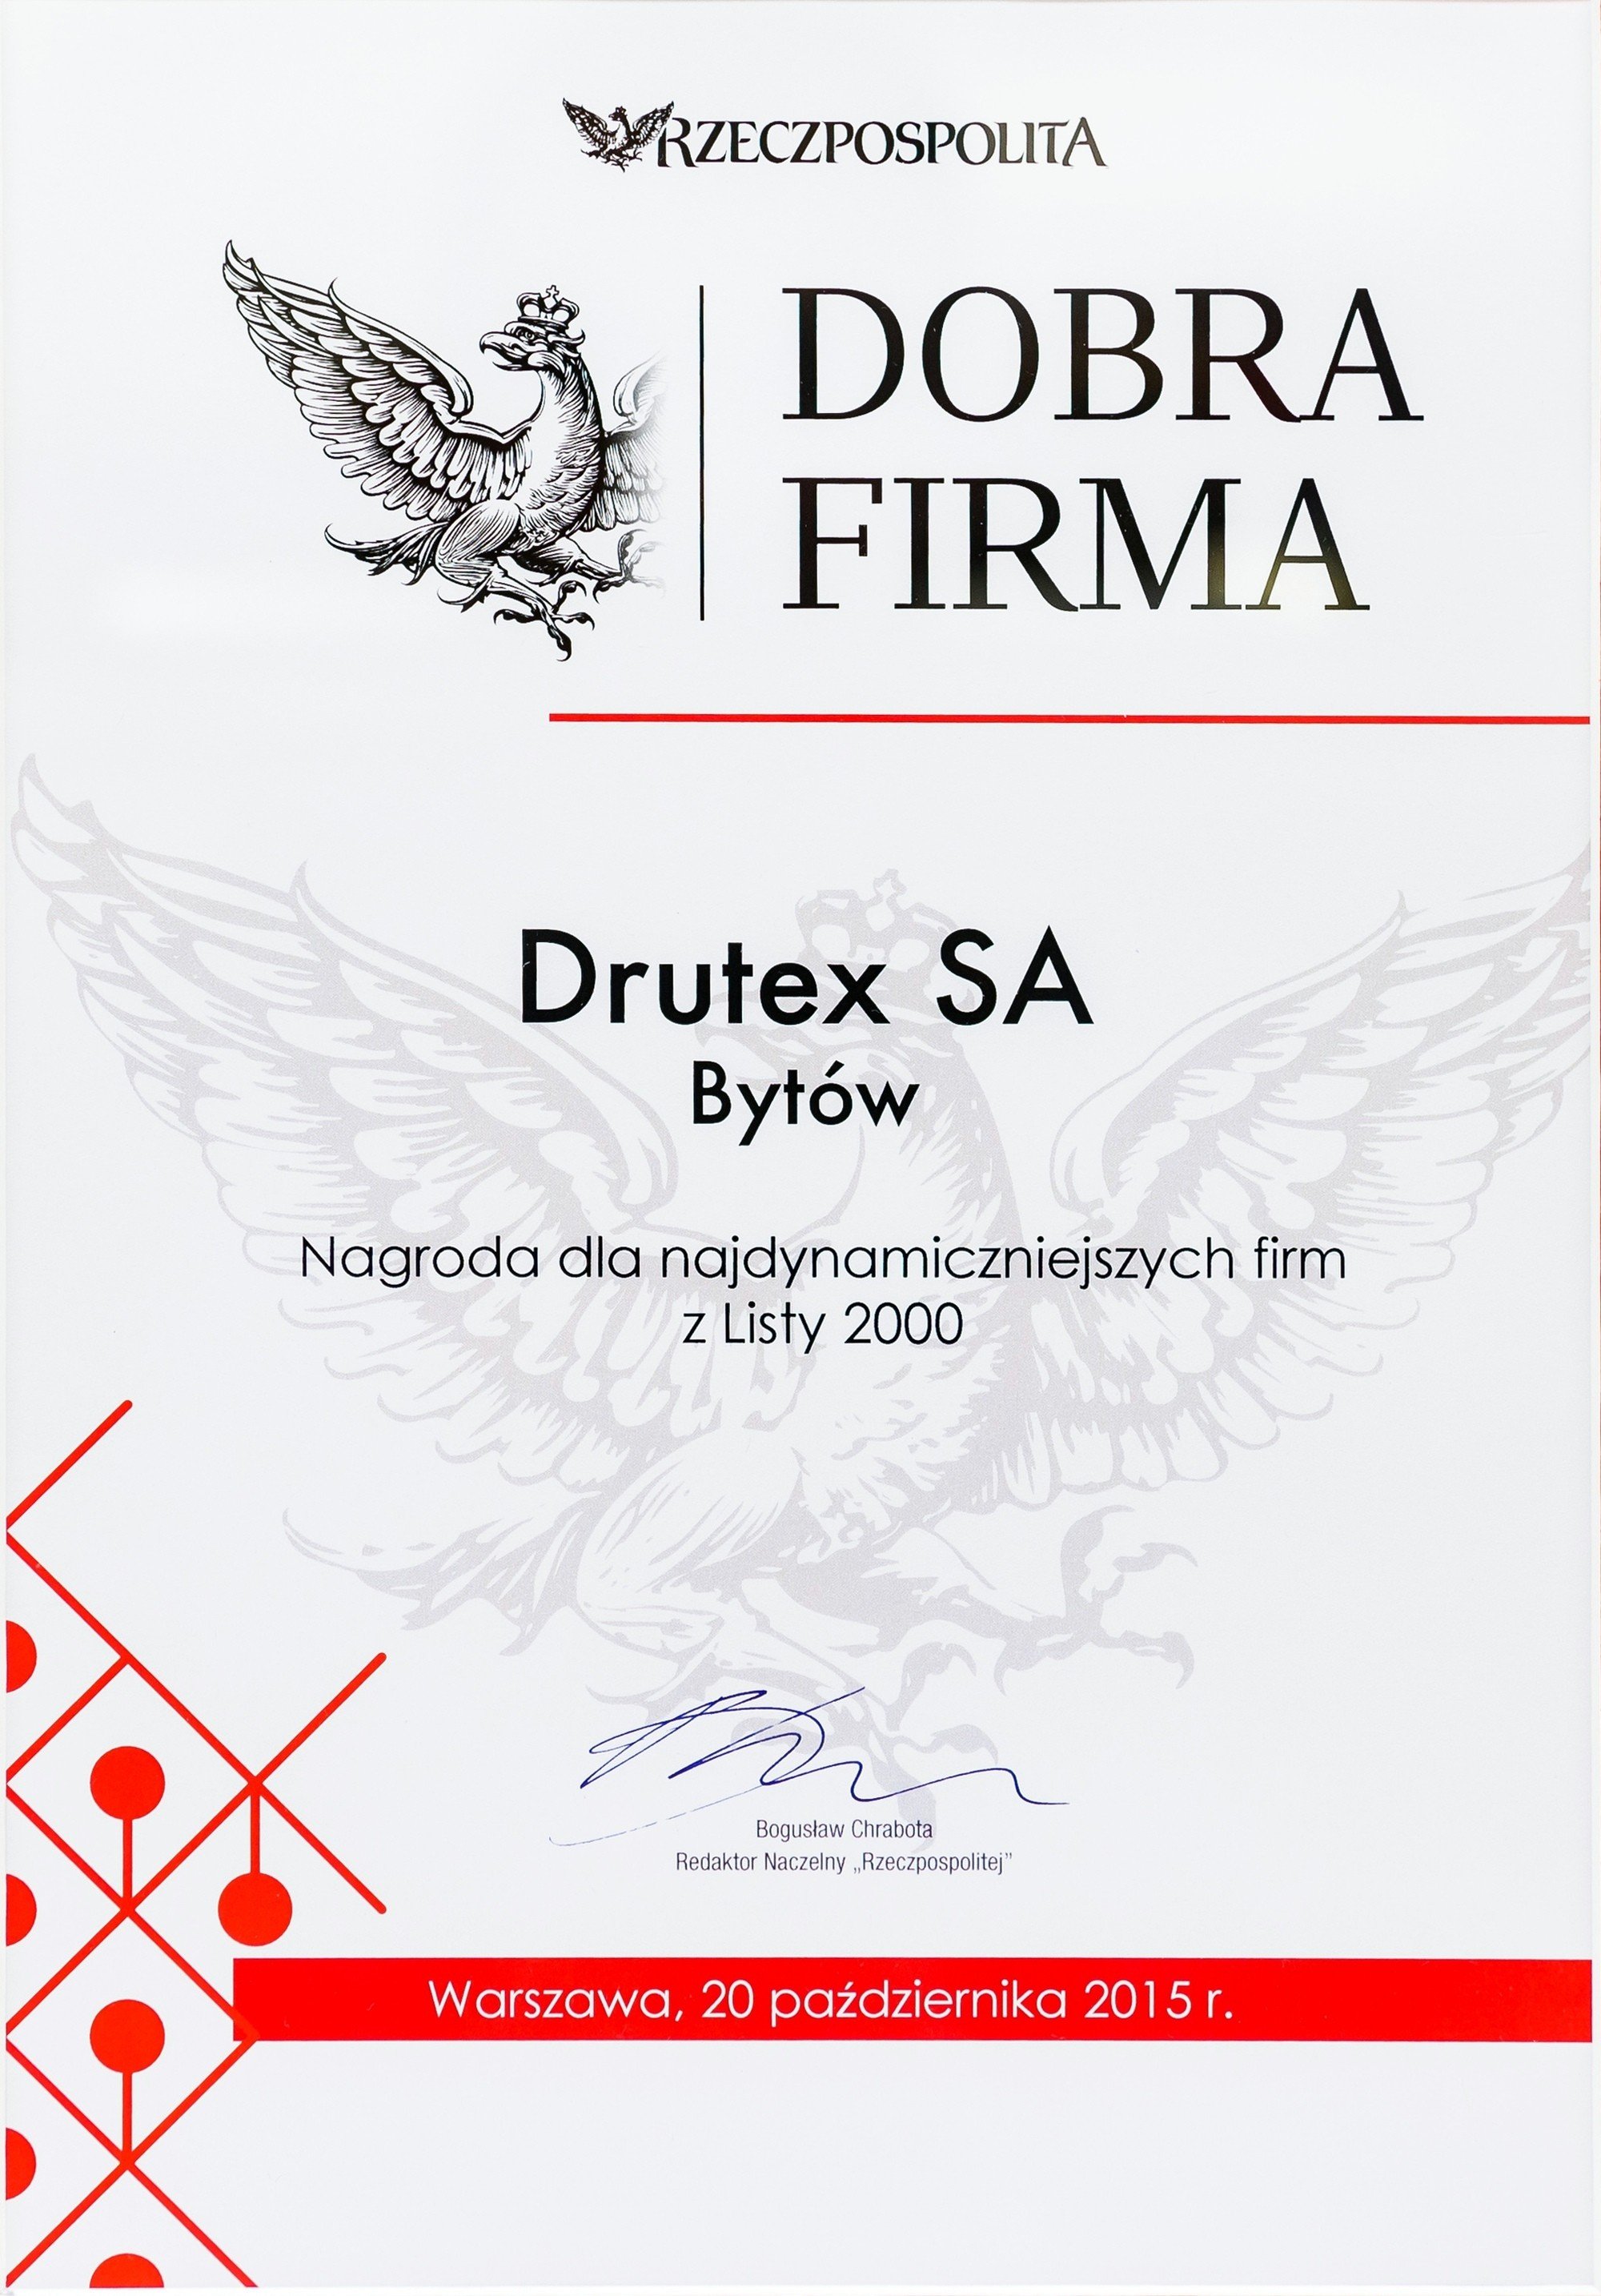 DRUTEX w gronie najlepszych 20 polskich przedsiębiorstw.